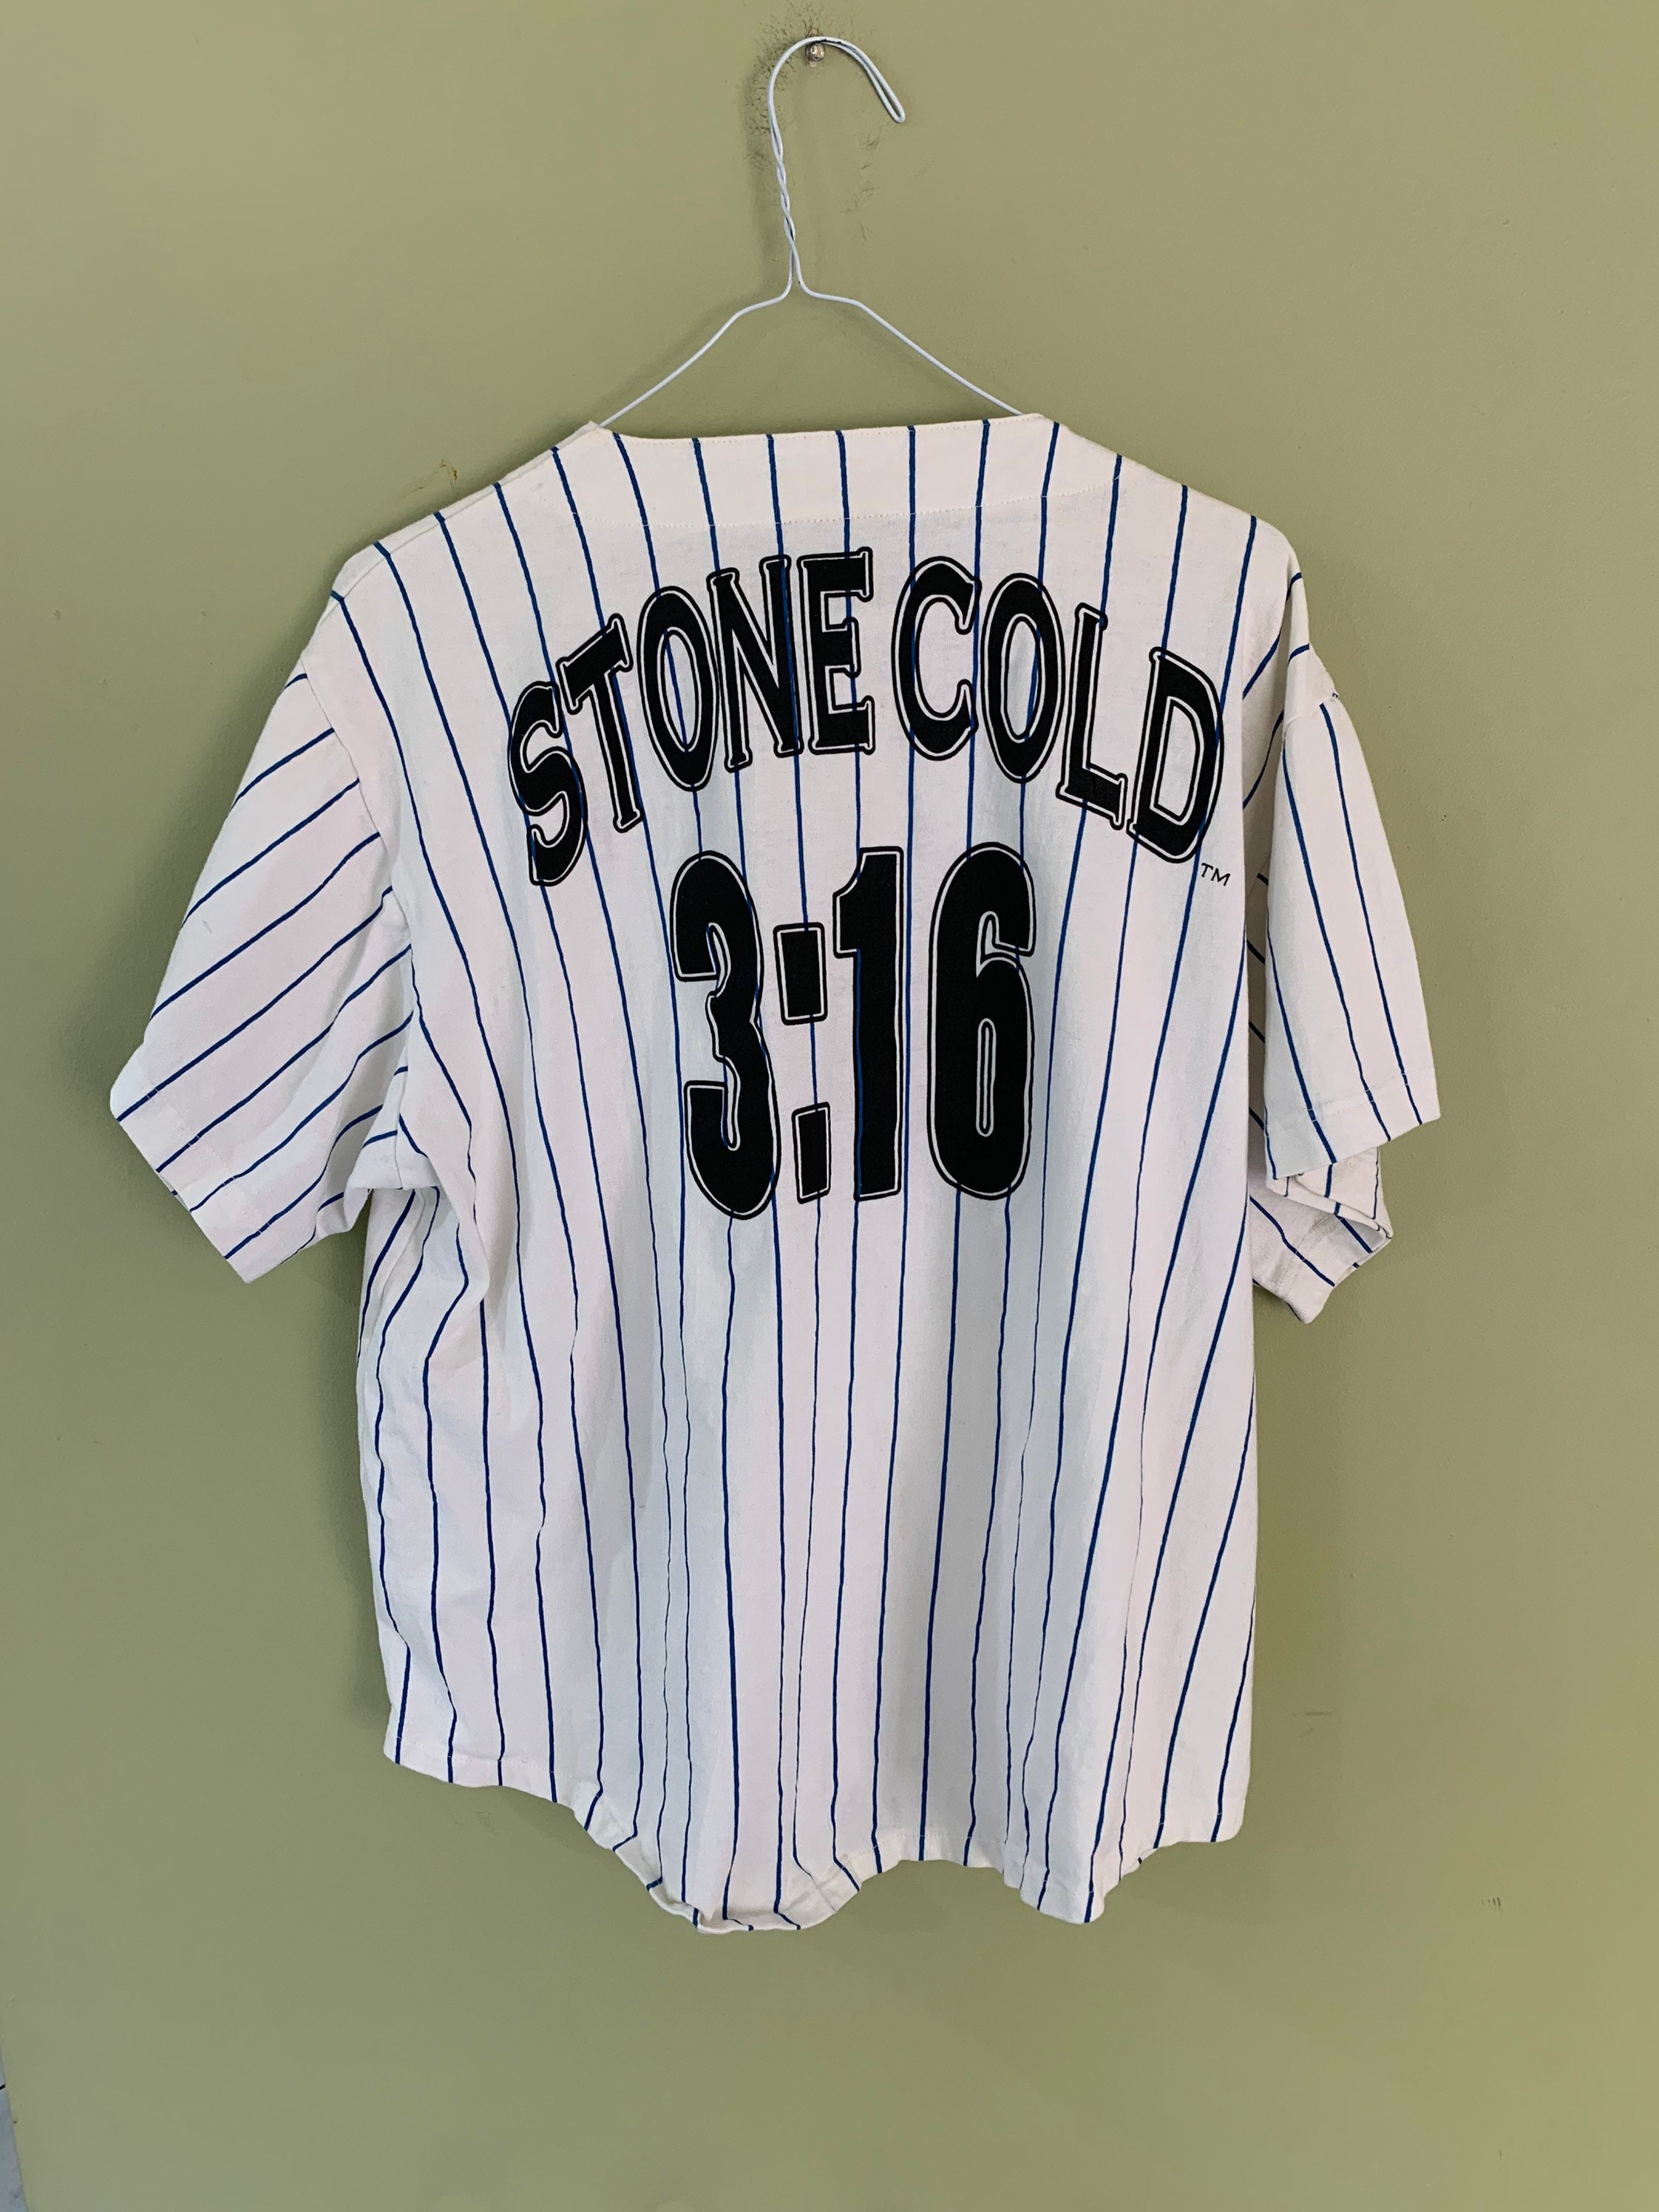 stone cold steve austin baseball jersey